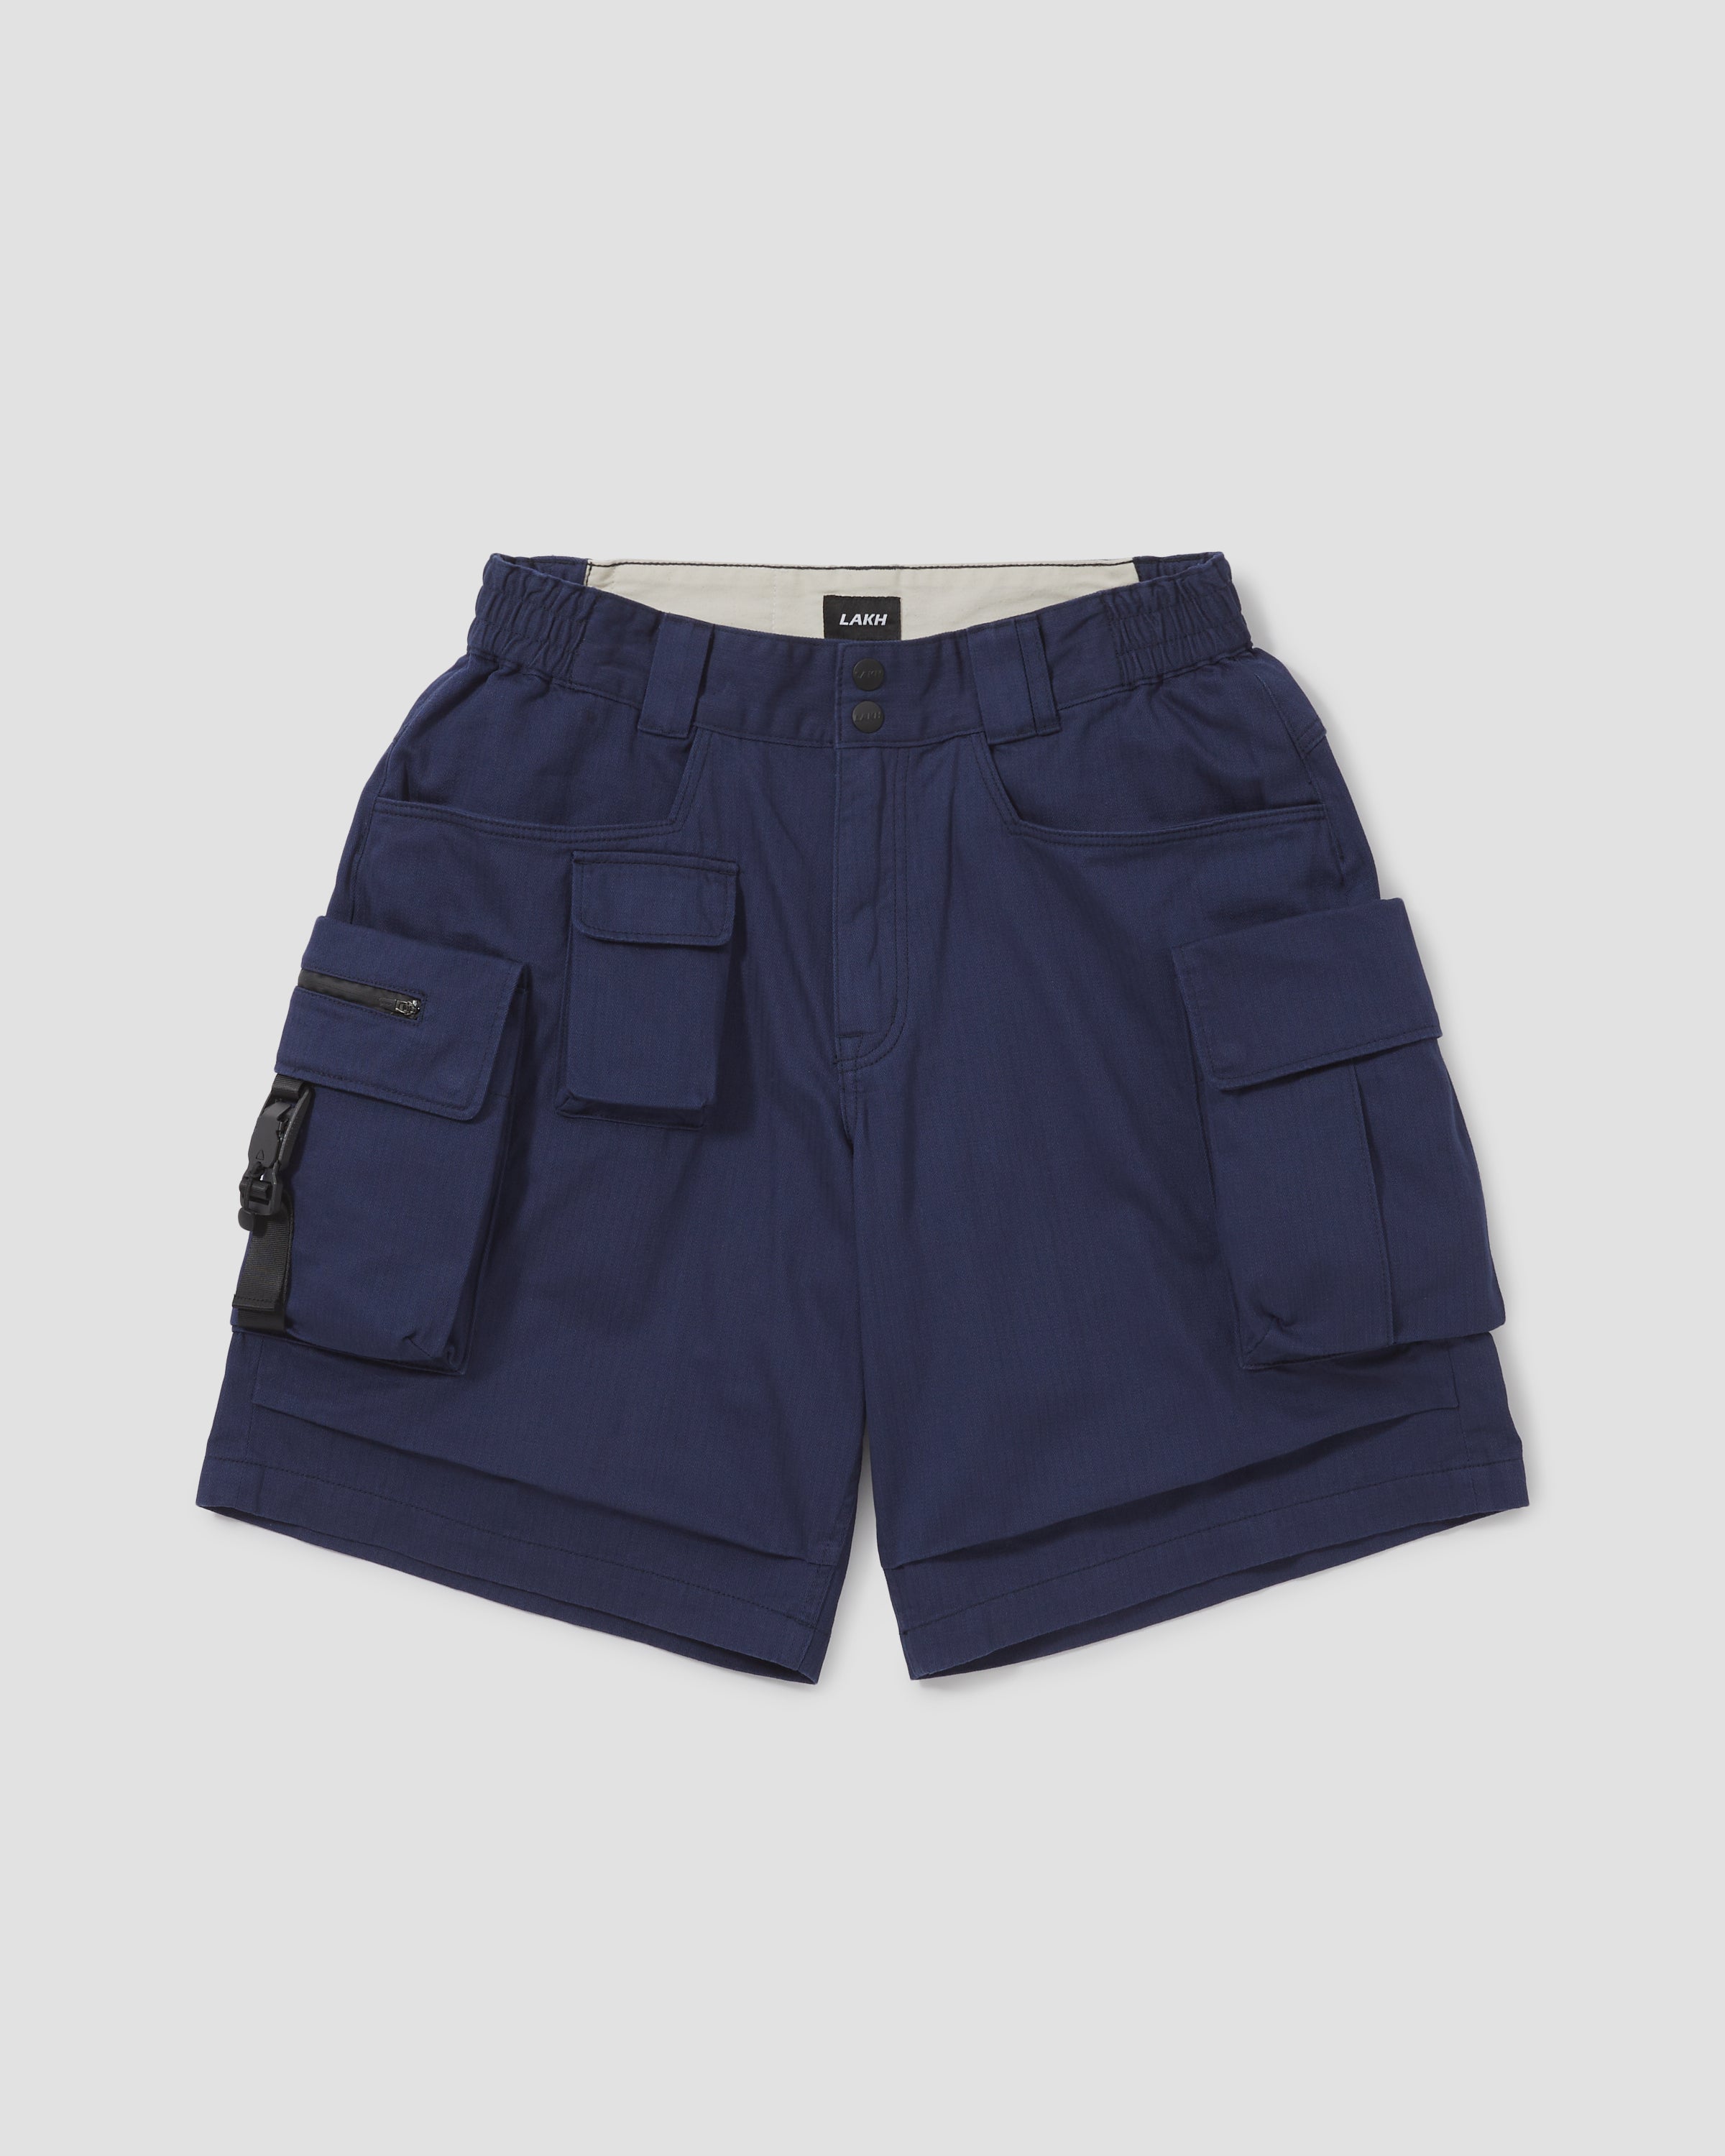 Ten Pockets Cargo Shorts - Herringbone Navy – LAKH supply